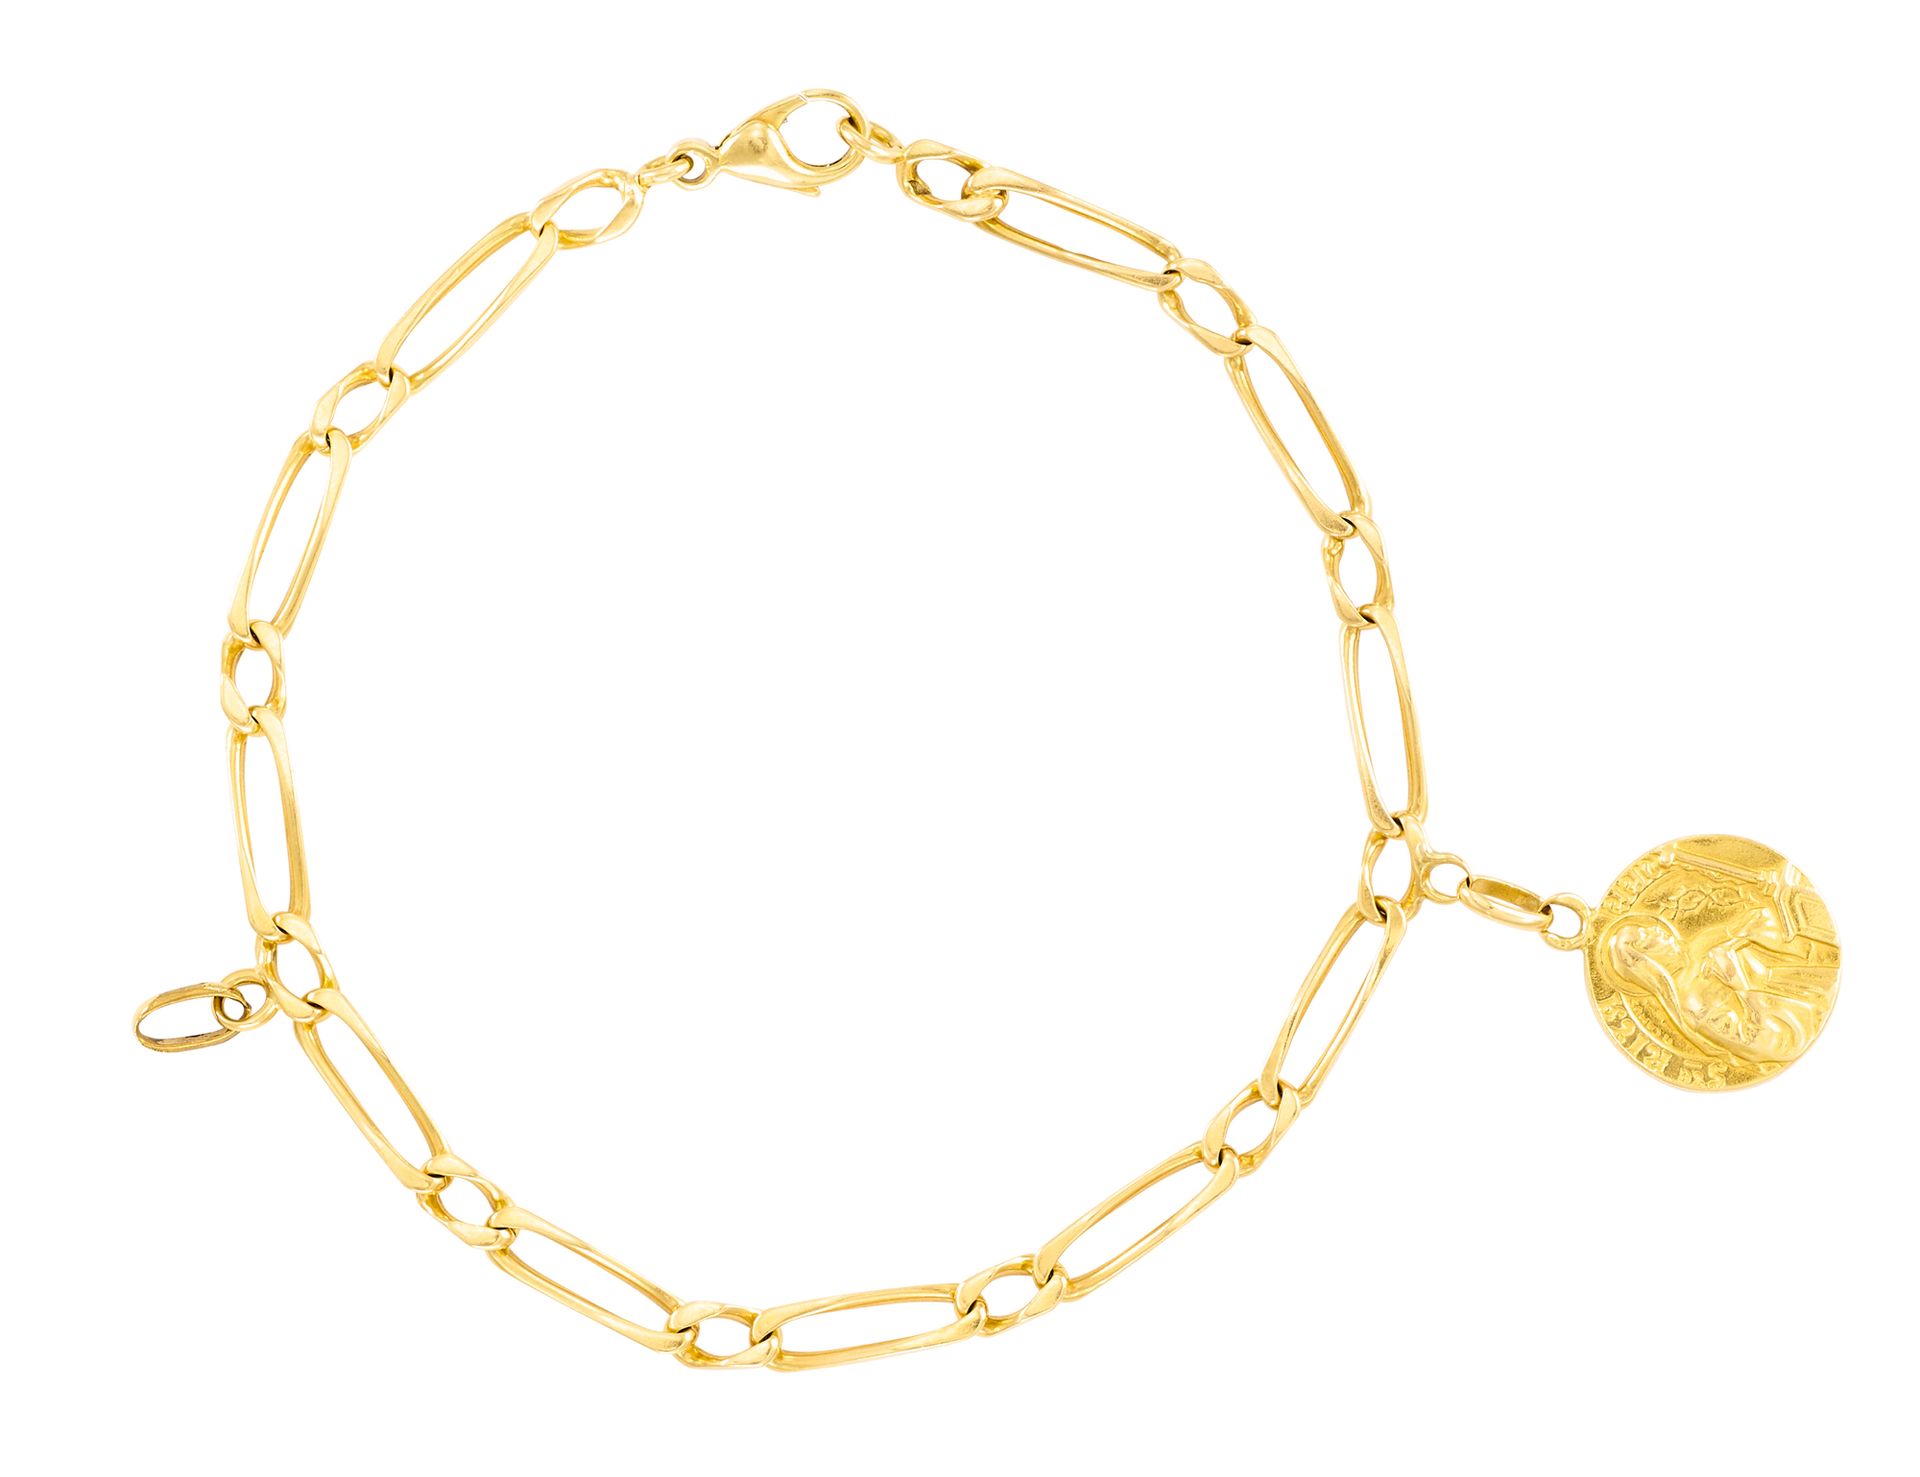 Bracelet de oro amarillo con cadena alargada que sostiene una medalla religiosa
&hellip;